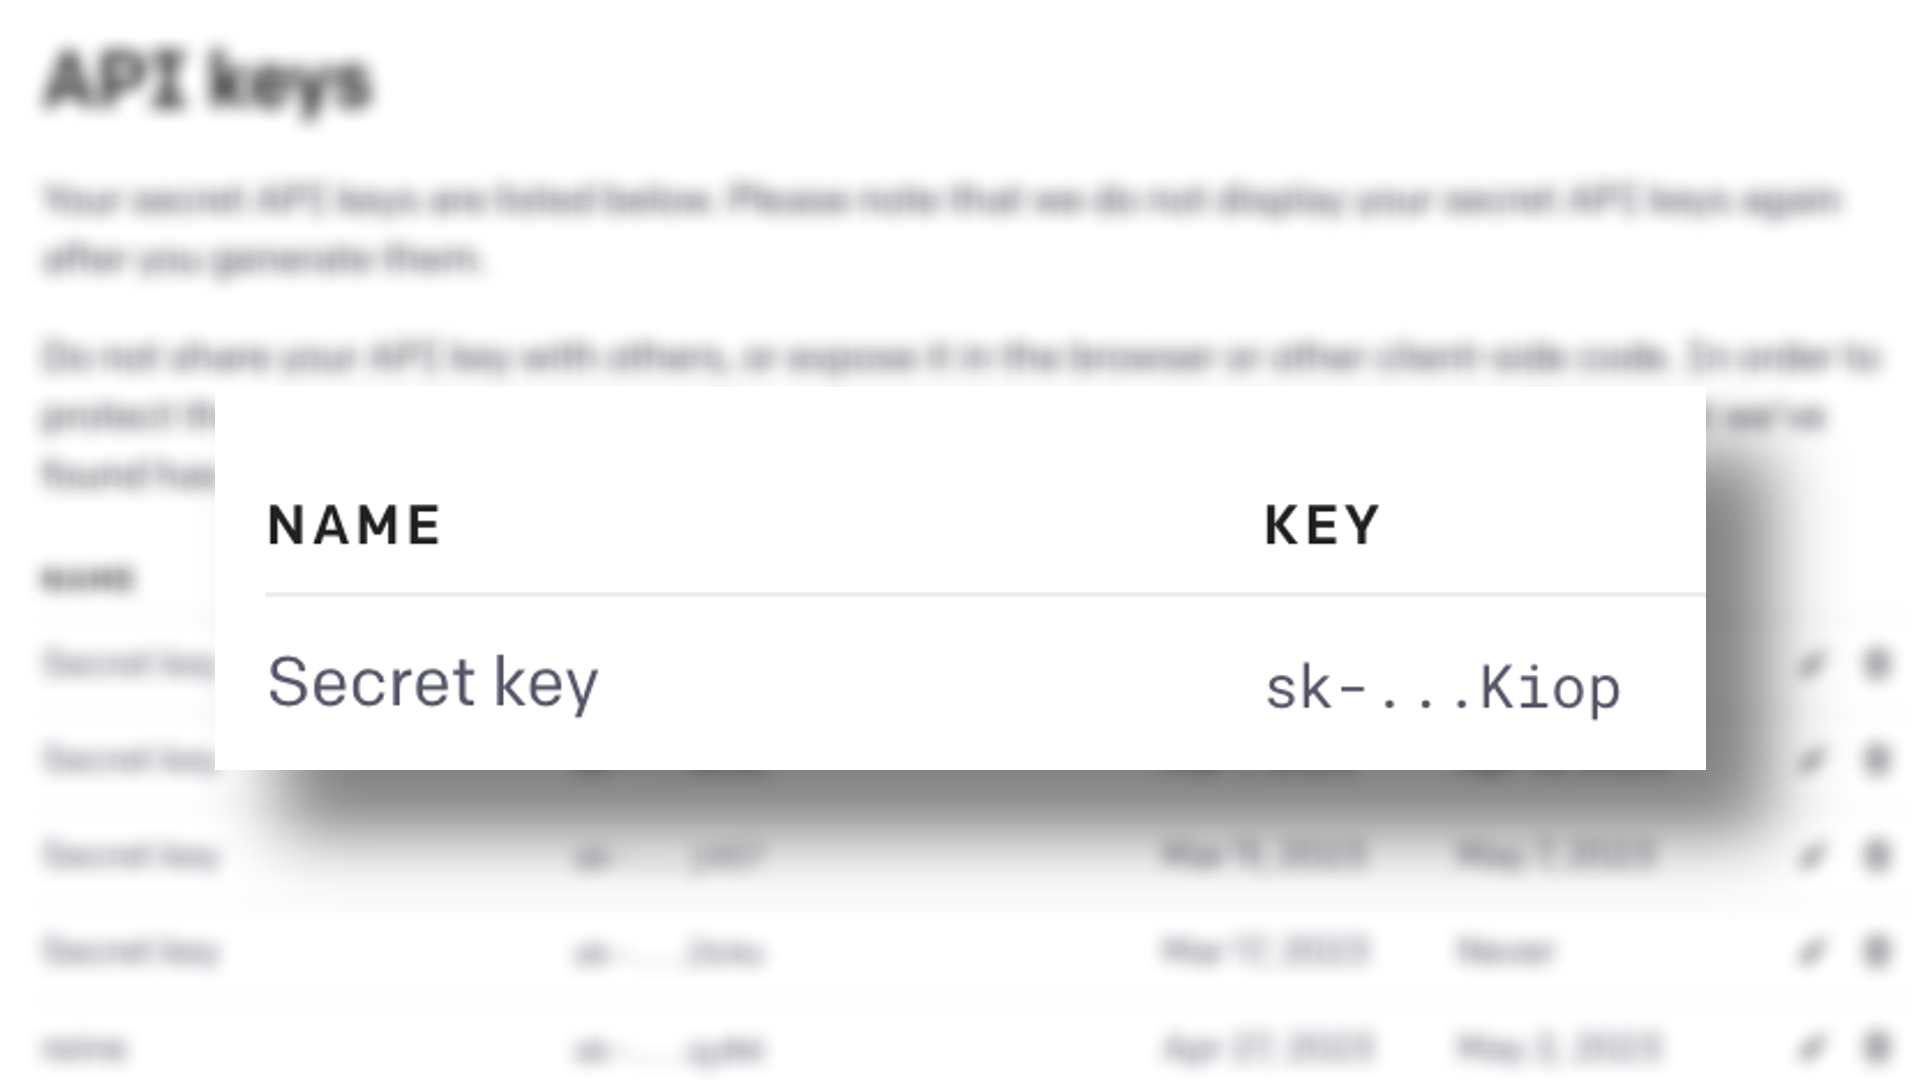 该图像显示了一个 API 密钥的示例，其中显示了名称、密钥和密钥。全文：API 密钥——名称 KEY 秘密密钥 sk -... Kiop